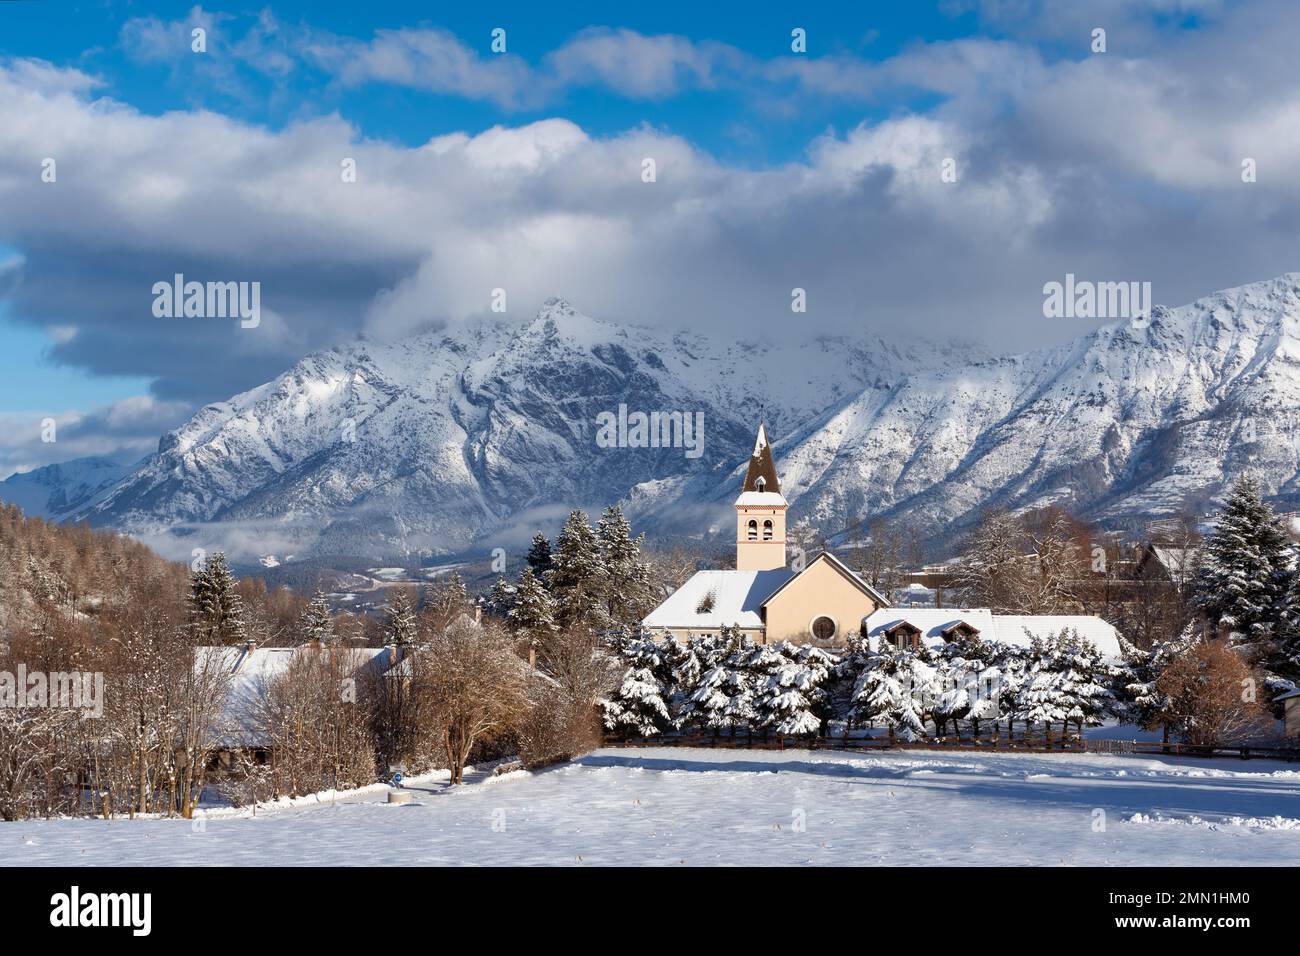 Parc national des Ecrins dans les Alpes (région de Champsaur) en hiver. L'église du village de Laye après les chutes de neige. Hautes-Alpes, France Banque D'Images